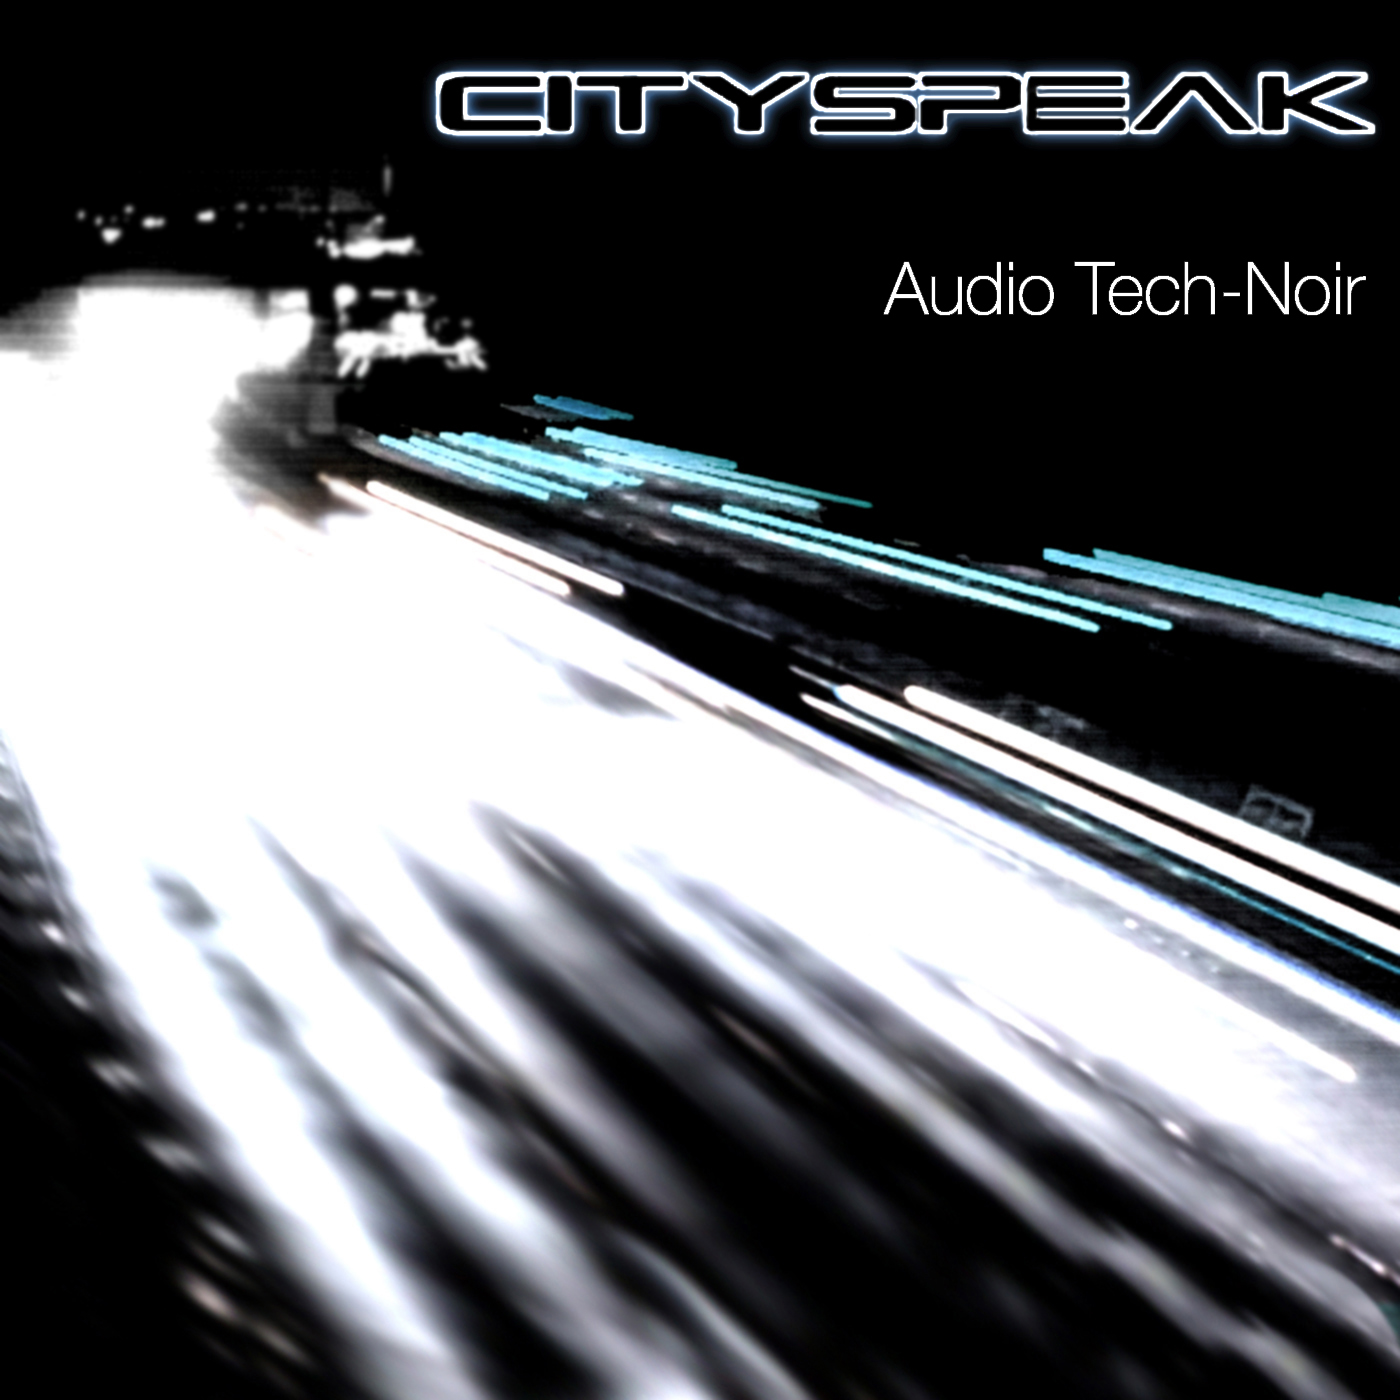  CitySpeak – Audio Tech-Noir